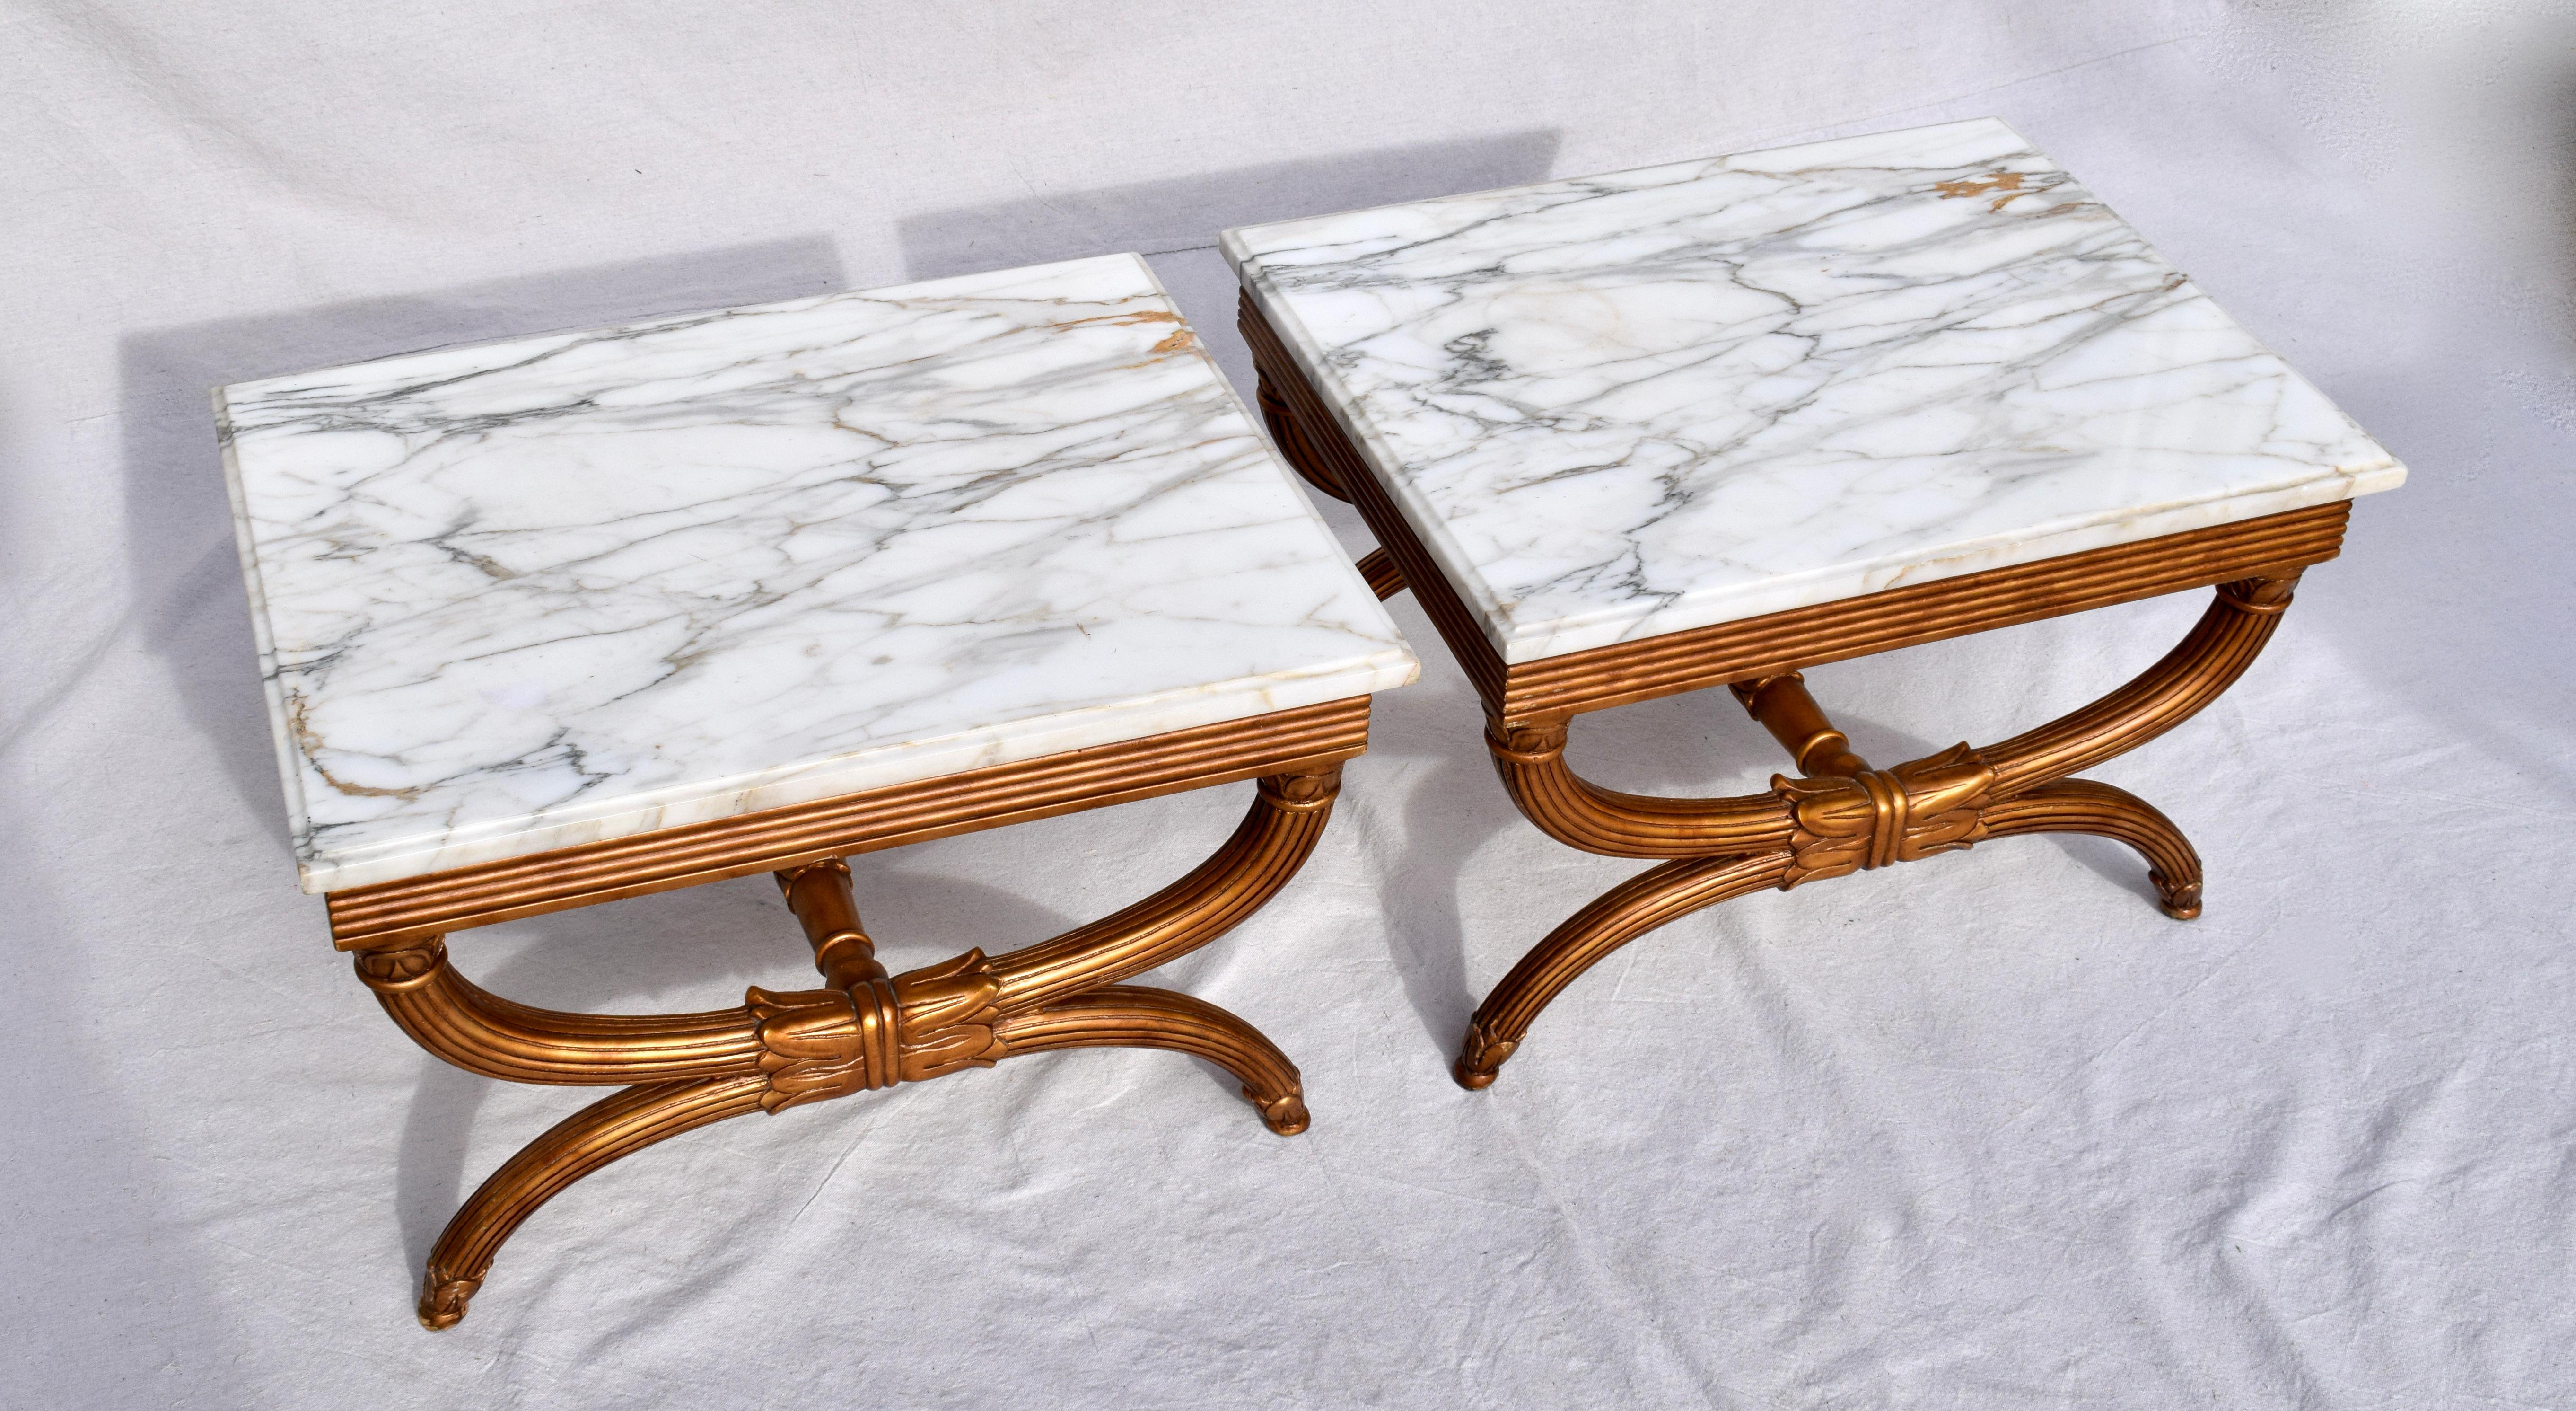 Élégante paire de tables Curule en or, en forme de X, avec brancards et plateaux en marbre de Carrare, fabriquées en Italie ; signées. Finition originale magnifiquement entretenue. Les dessus sont amovibles.